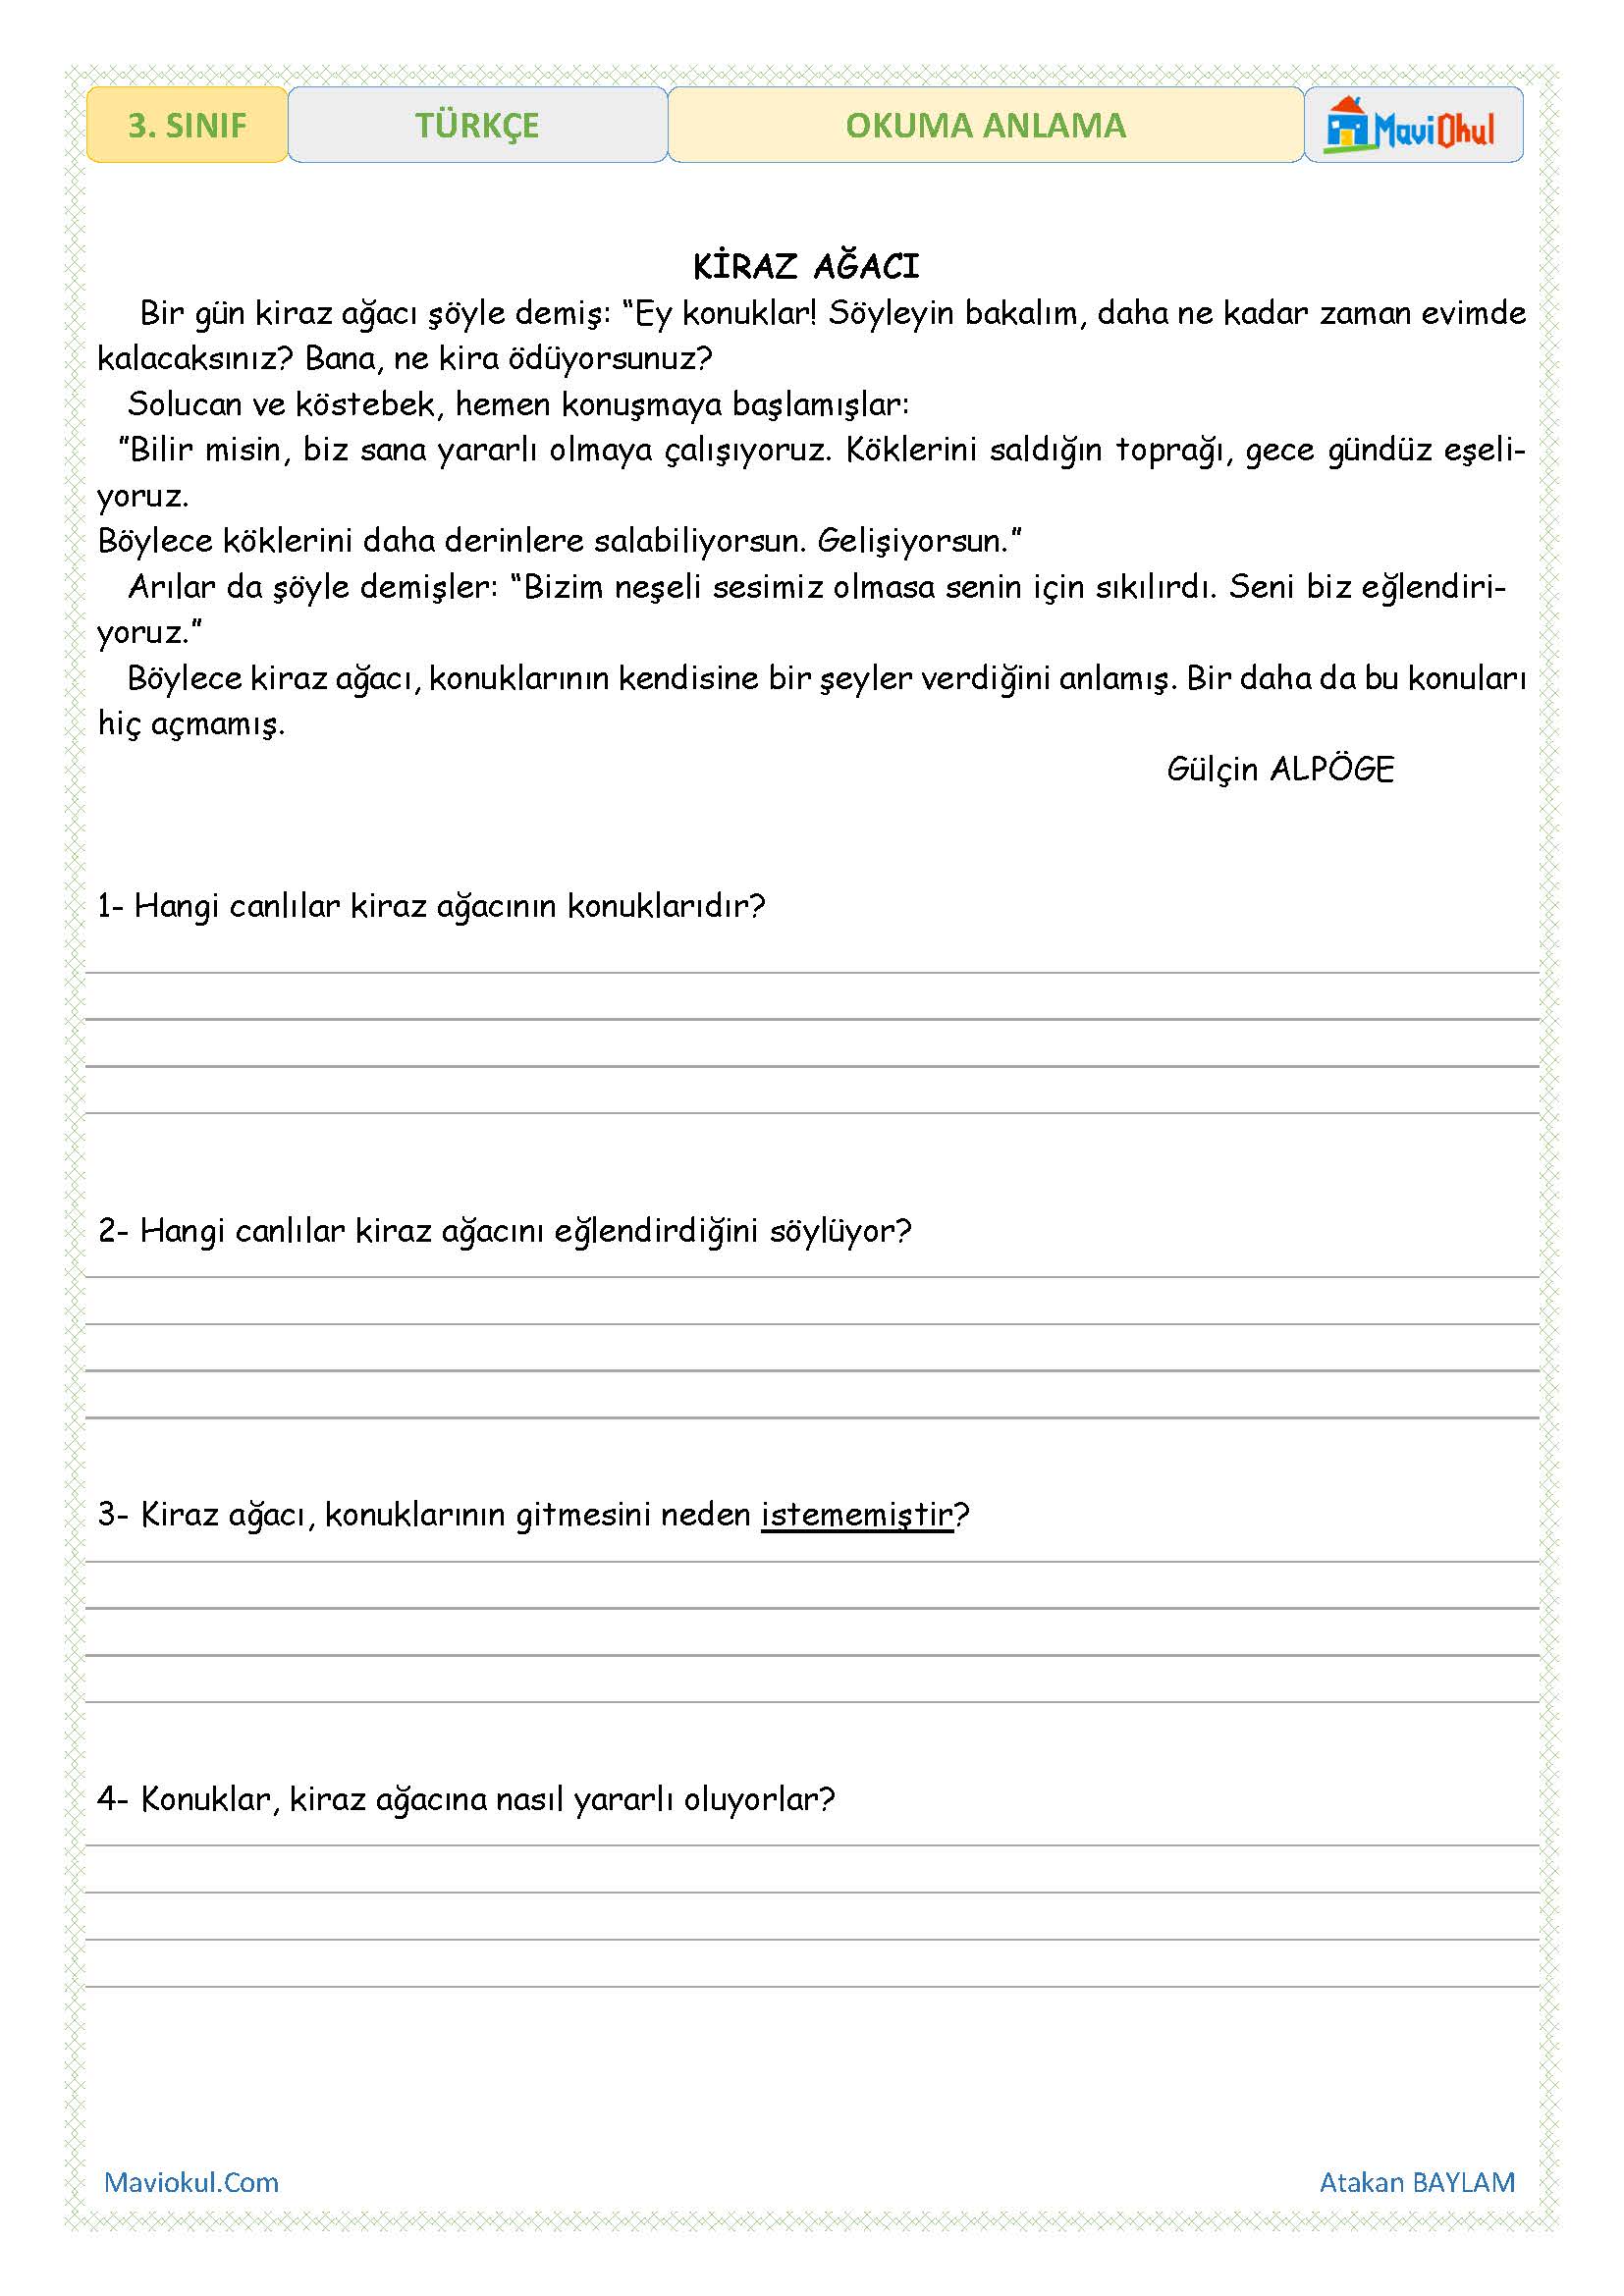 3. Sınıf Türkçe Okuma Anlama - Kiraz Ağacı